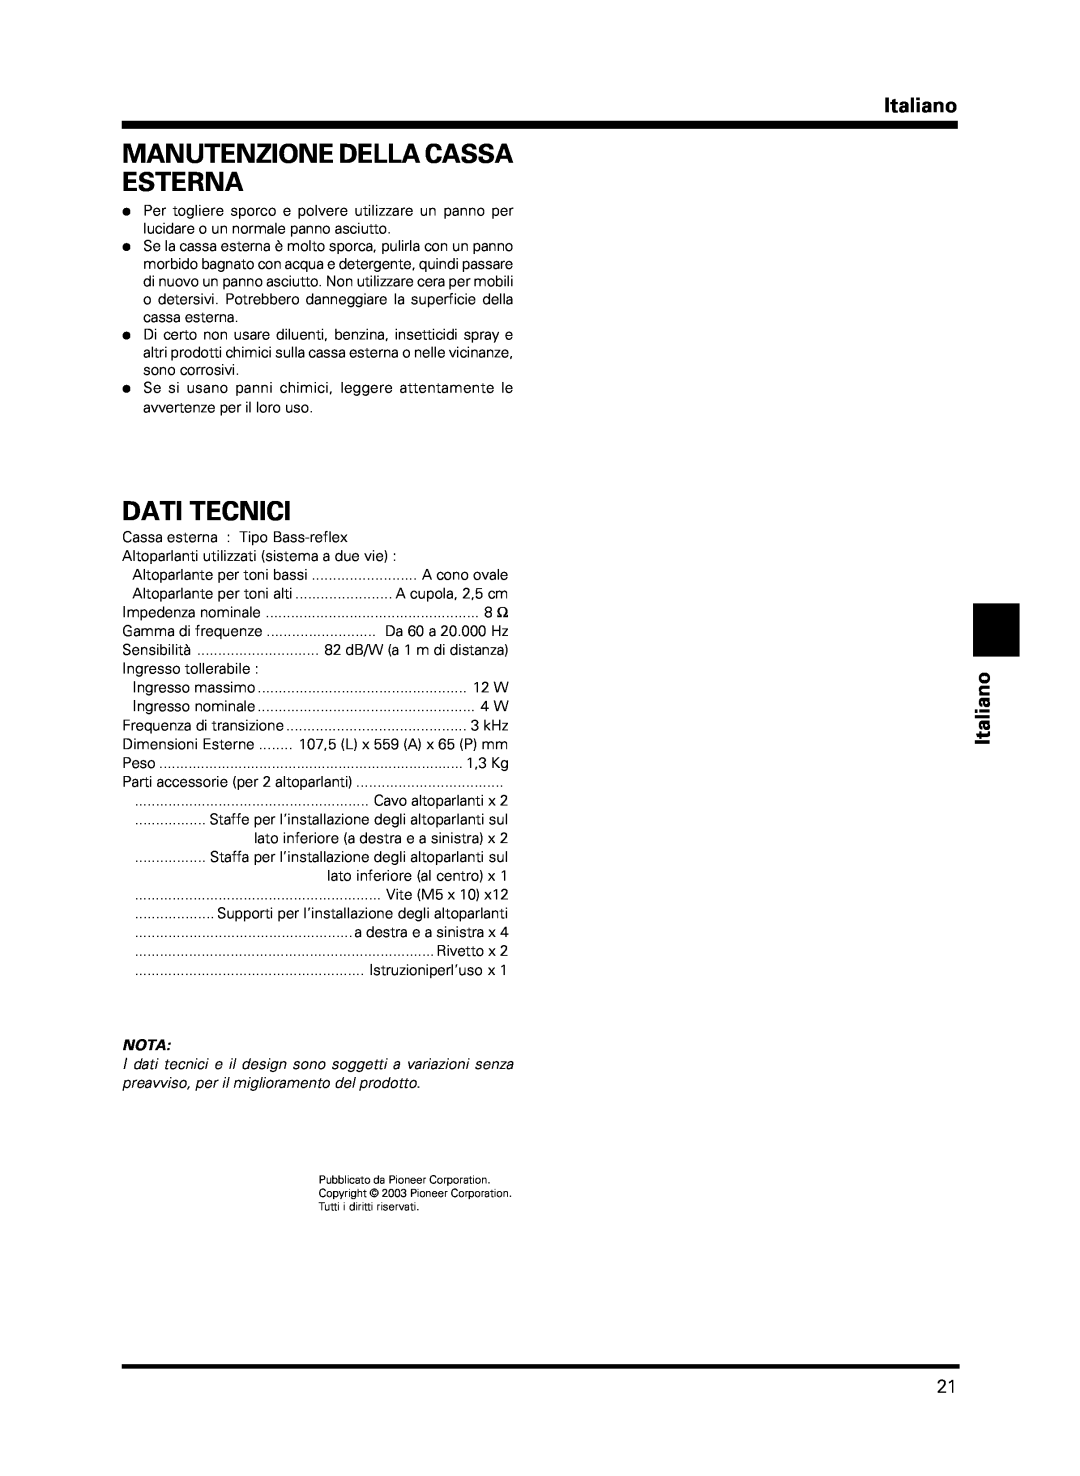 Pioneer PDP-S13-LR manual Manutenzione Della Cassa Esterna, Dati Tecnici, Italiano Italiano, Nota 